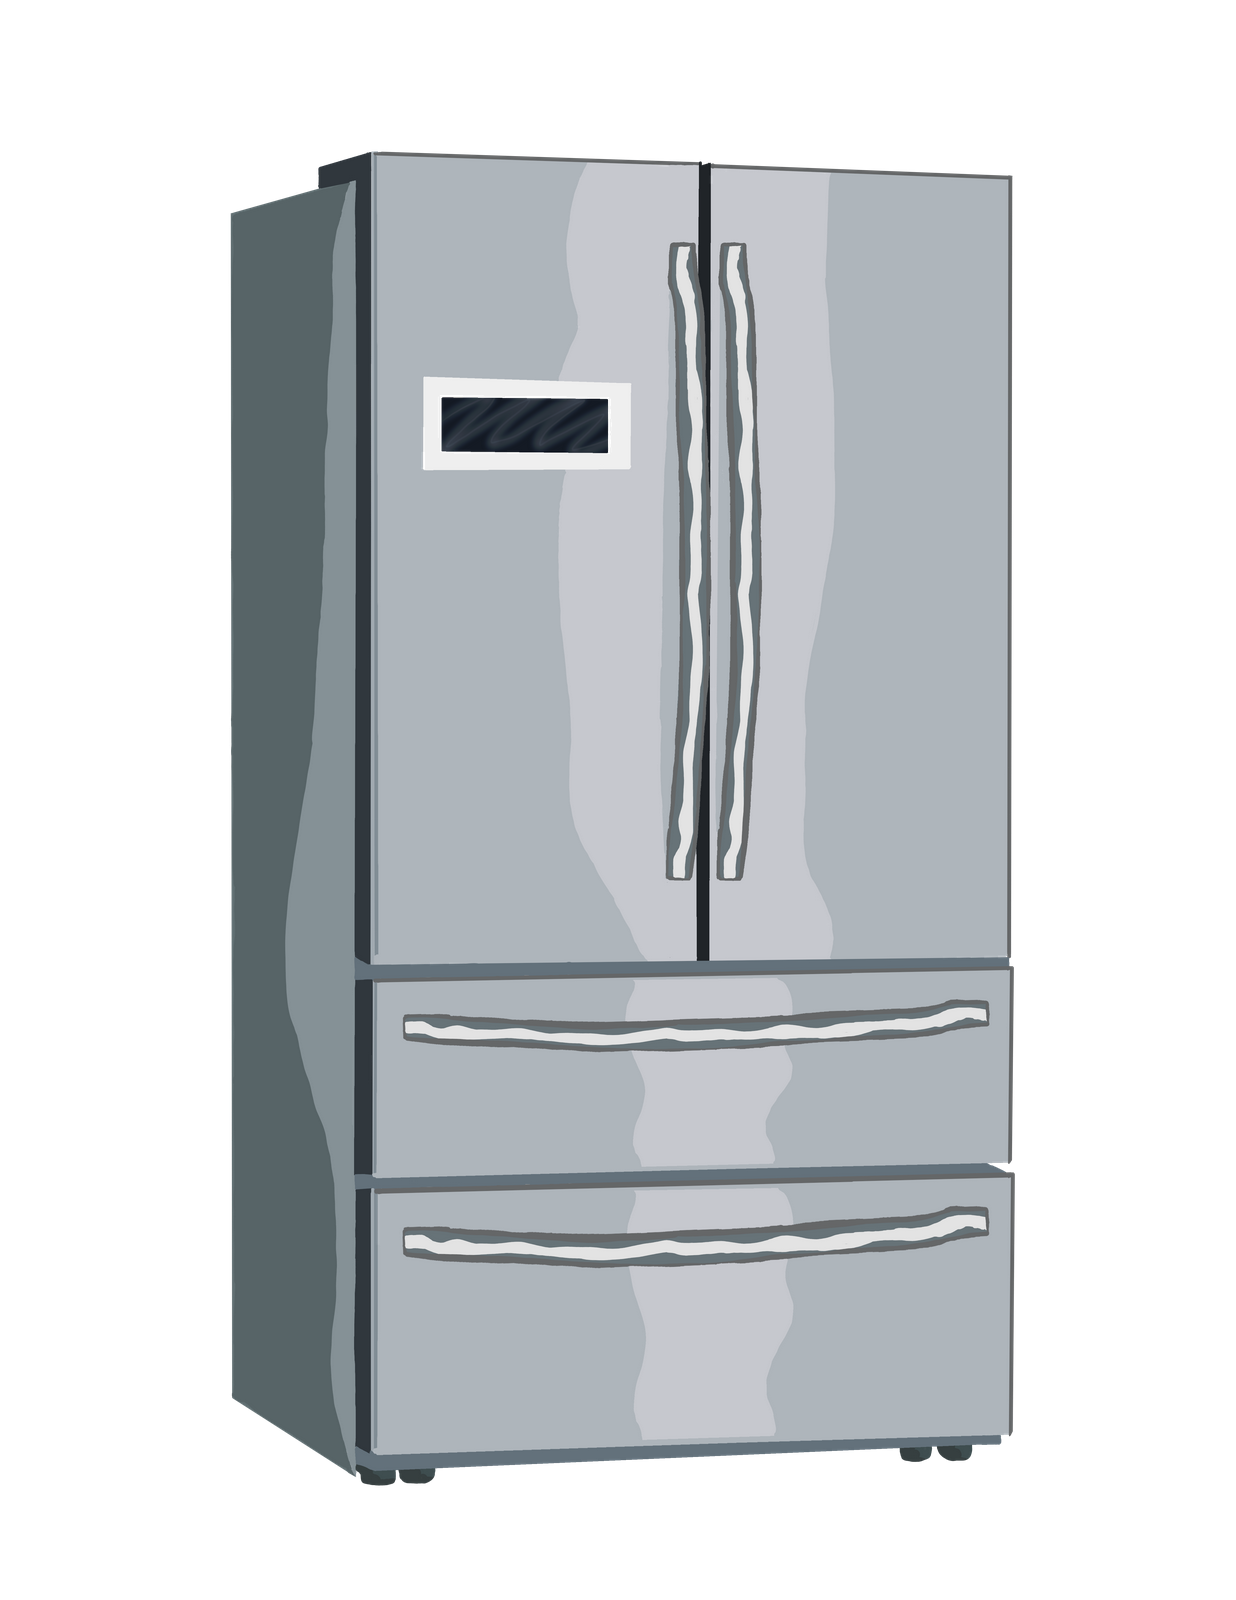 Kenmore Refrigerator Repair In Montreal